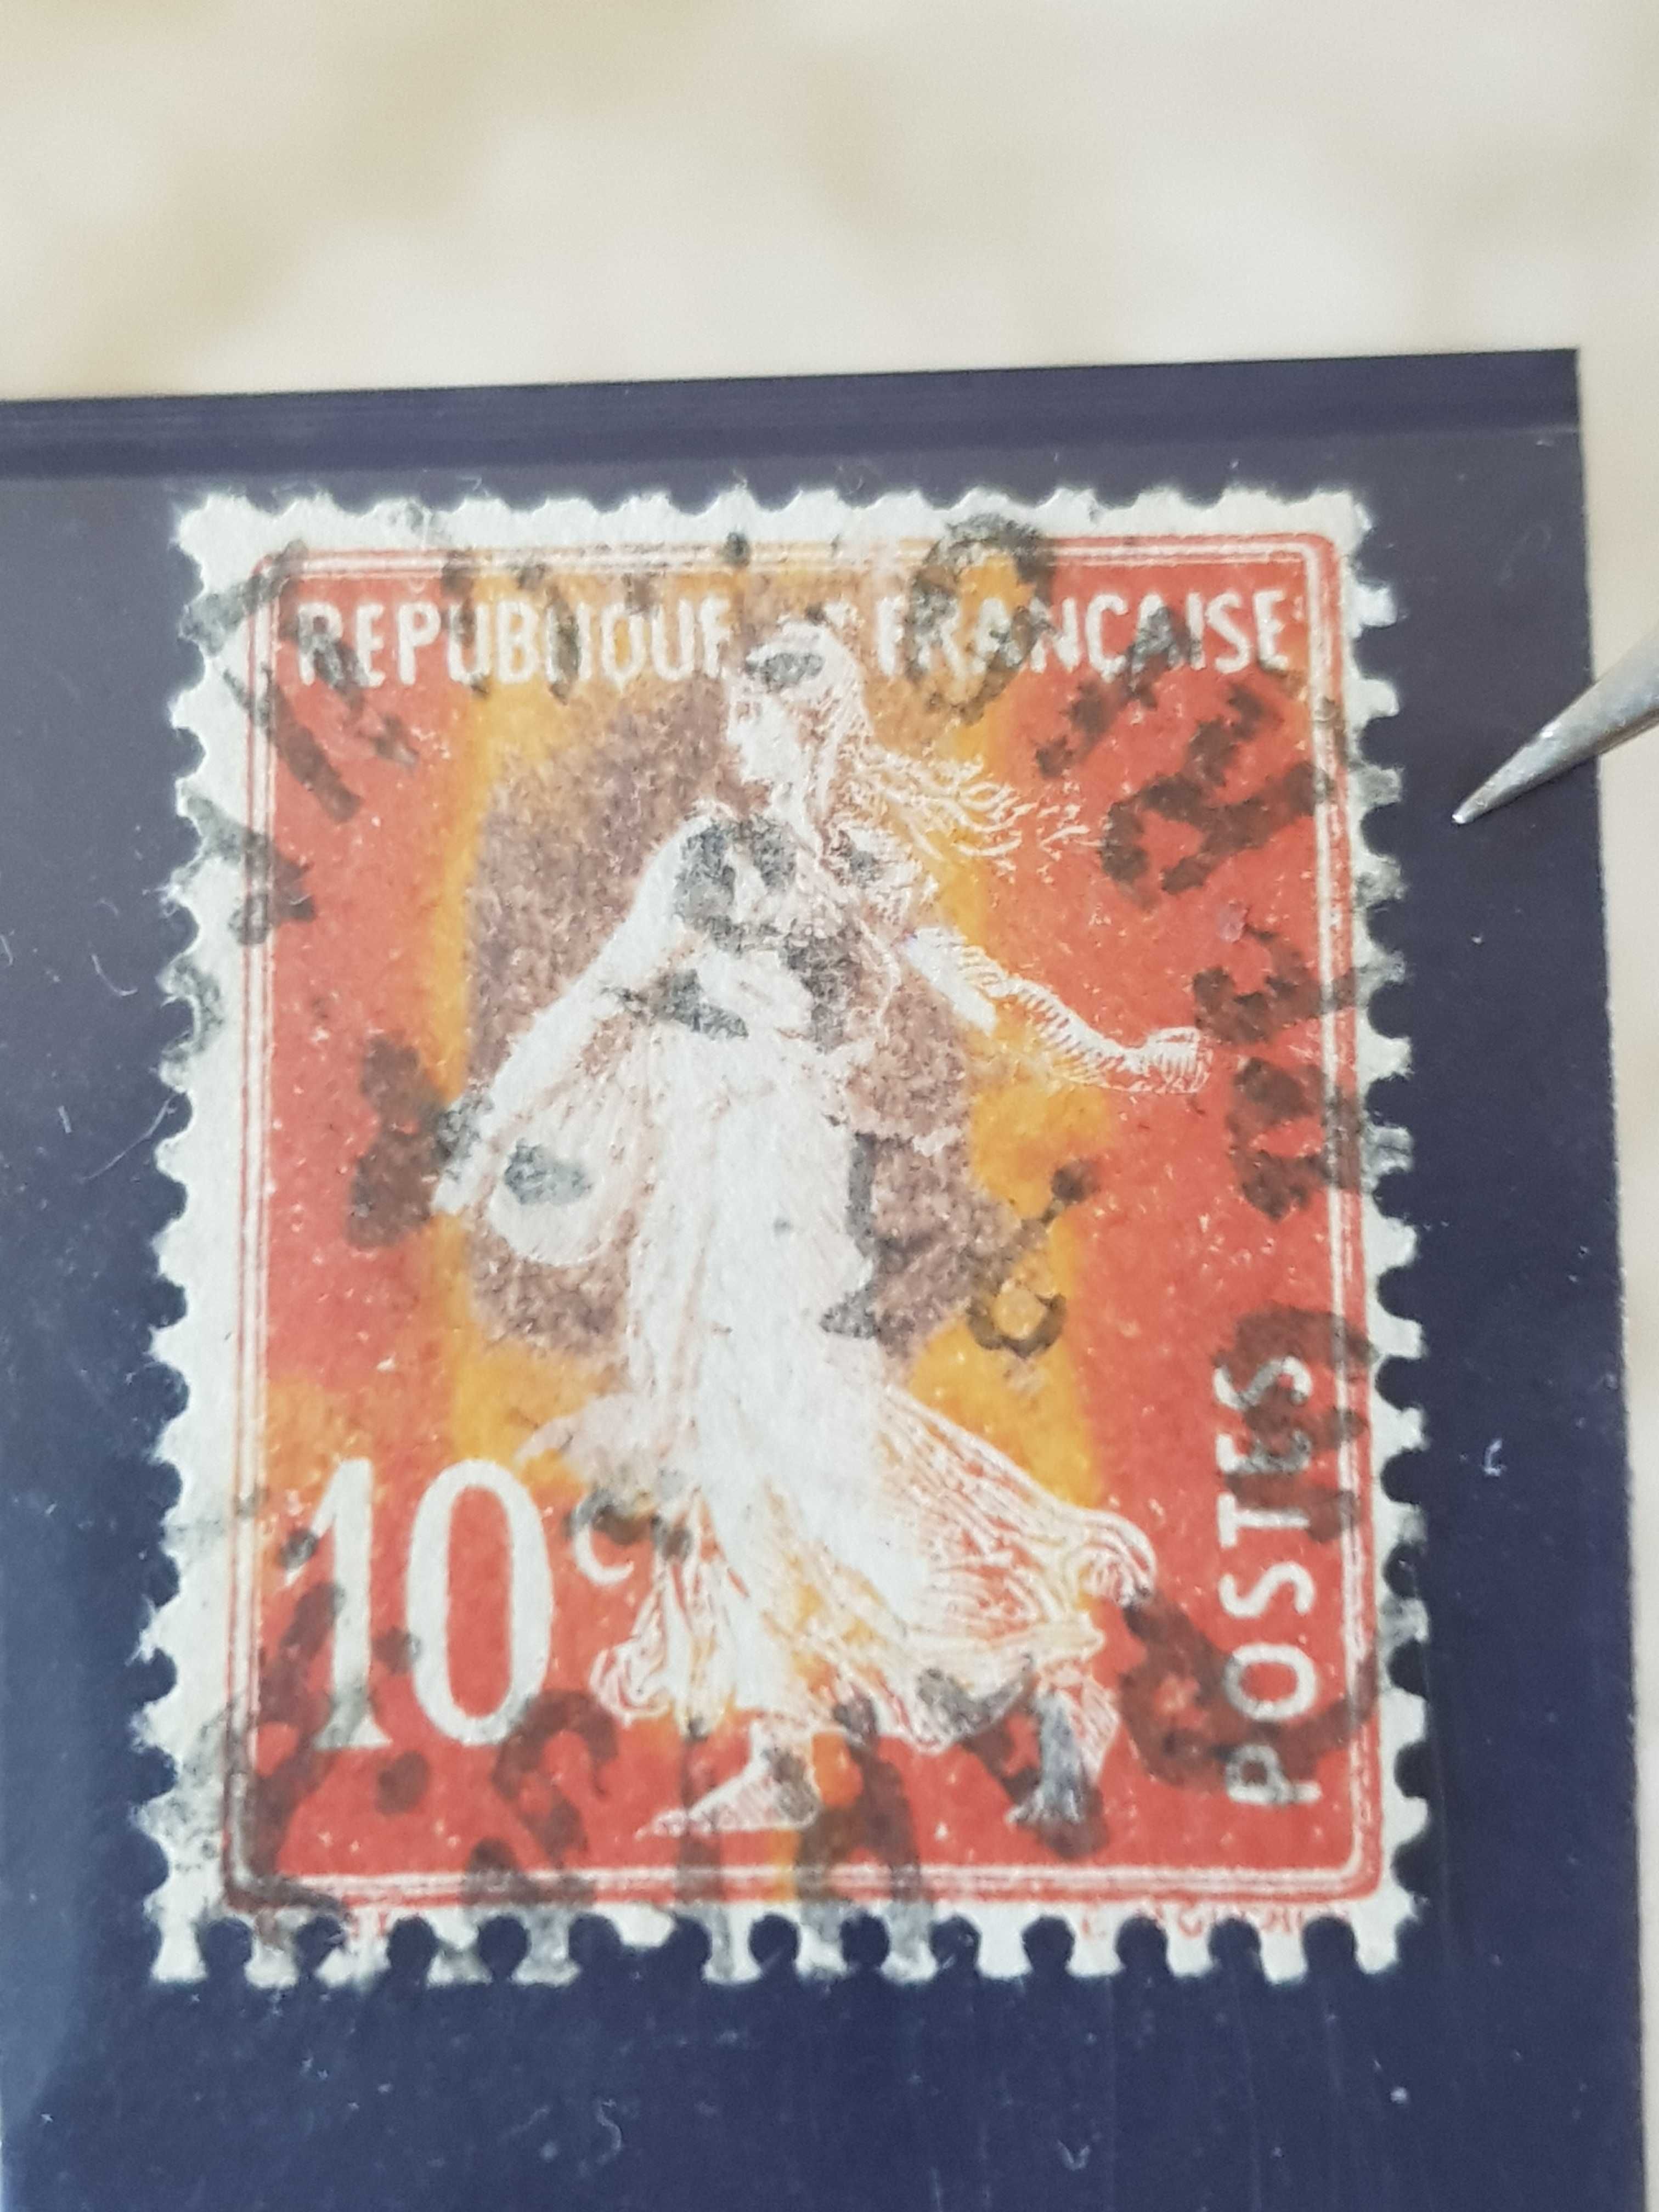 Vând sau schimb o colecție de timbre poştale vechi cu EROARE mare.